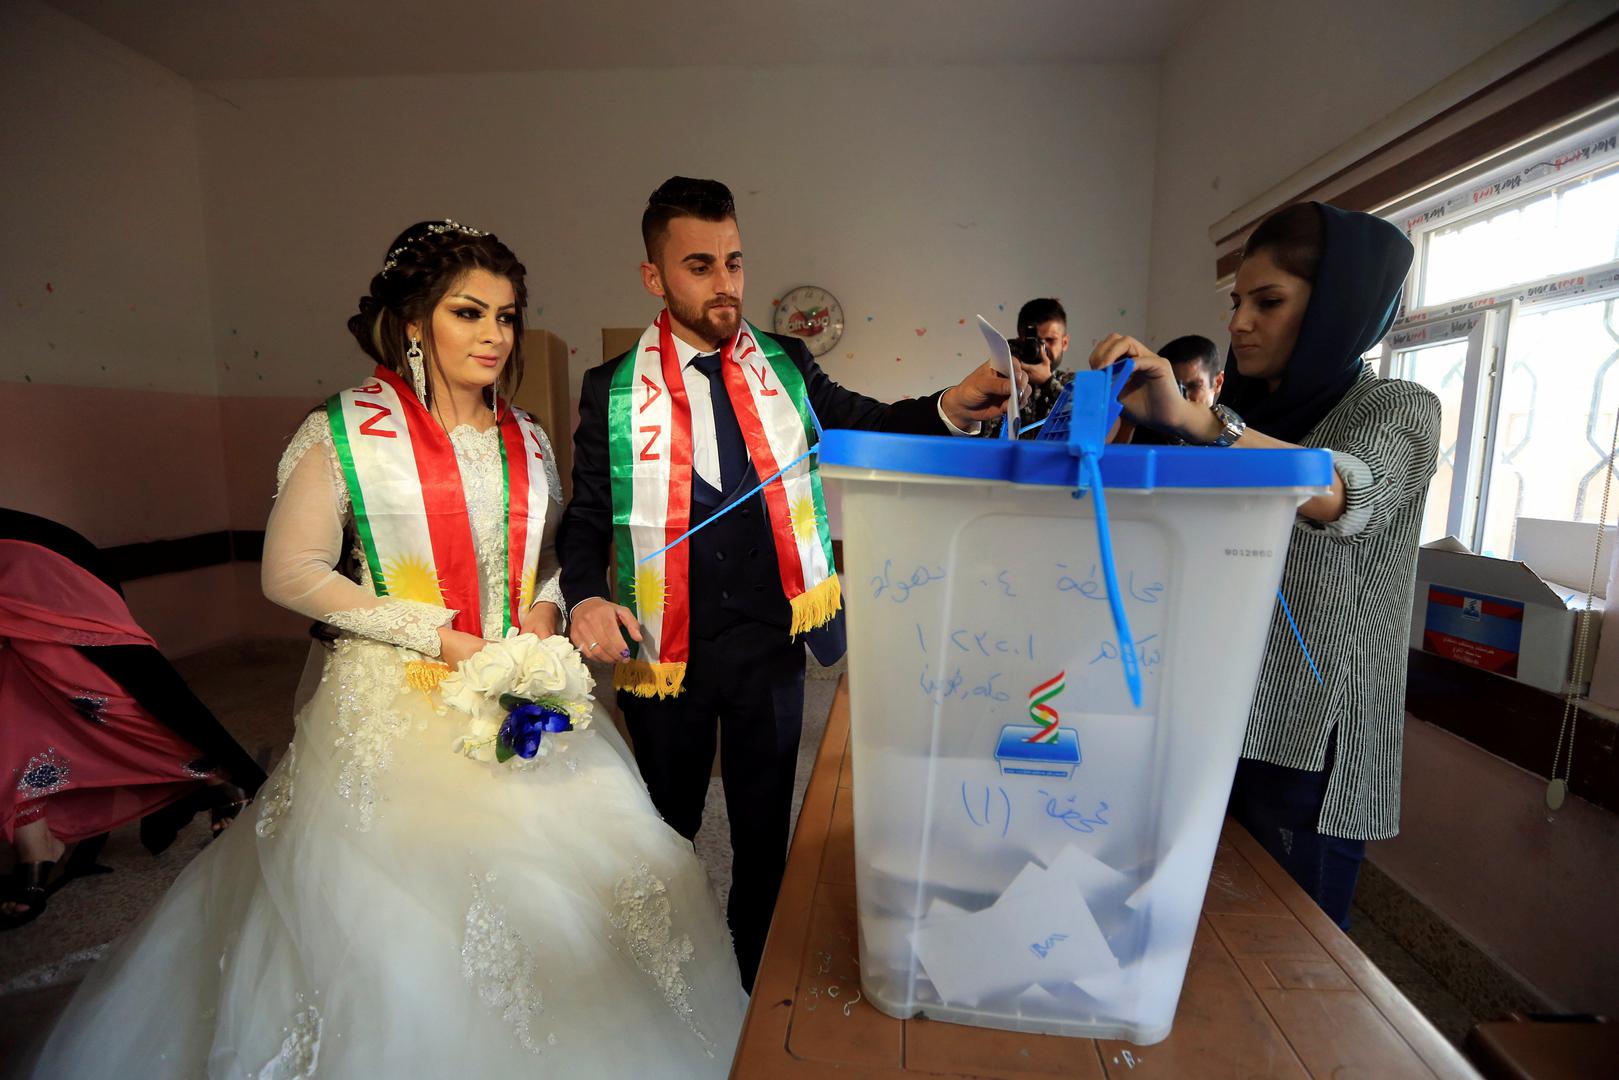 Mladenka i mladoženja iz grada Duhok kazali su u ponedjeljak dvaput “da” - za svoj brak i za državu Kurdistan